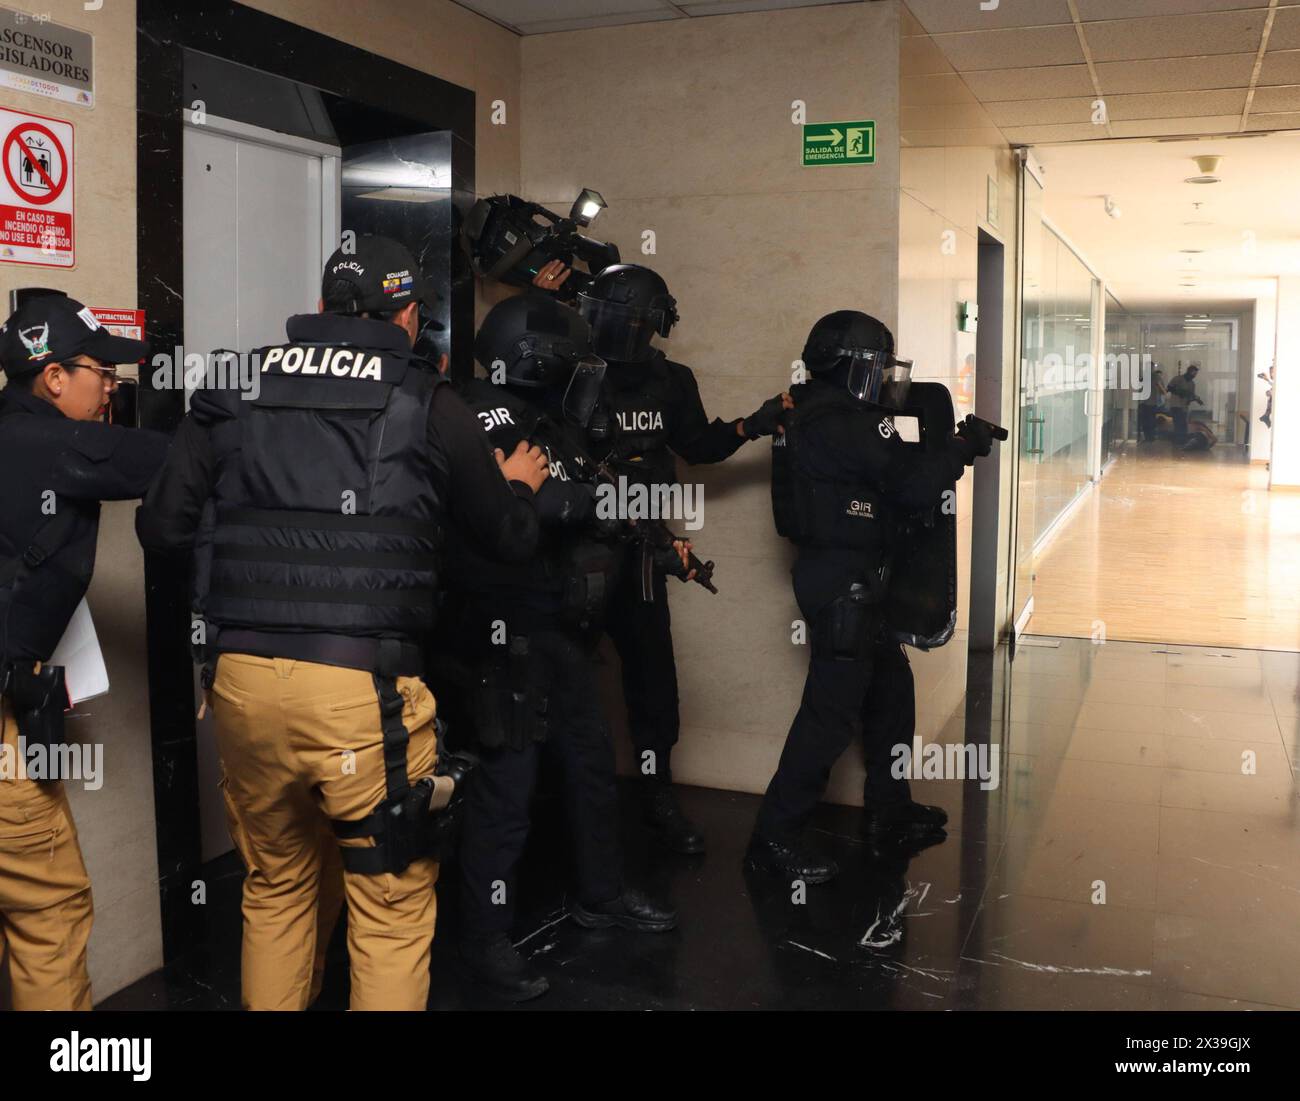 ASAMBLEA-SIMULACRO-ATENTADOS Quito, jueves 25 de abril del 2024 Similacro de atentados terroristas en contra de funcionarios y Asambleistas,en la Asamblea Nacional, Edificio del Palacio Legislativo y sus alrededores. Fotos:Rolando Enriquez/API Quito Pichincha Ecuador POL-ASAMBLEA-SIMULACRO-ATENTADOS-fd86297697881d07a87e6e51210d22ed *** ASAMBLEA SIMULACRO SIMULACRO ATENTADOS Quito, Thursday, April 25, 2024 Simulation of terrorist attacks against officials and Assembly Members, in the National Assembly, Legislative Palace Building and its surroundings Photos Rolando Enriquez API Quito Pichincha Stock Photo